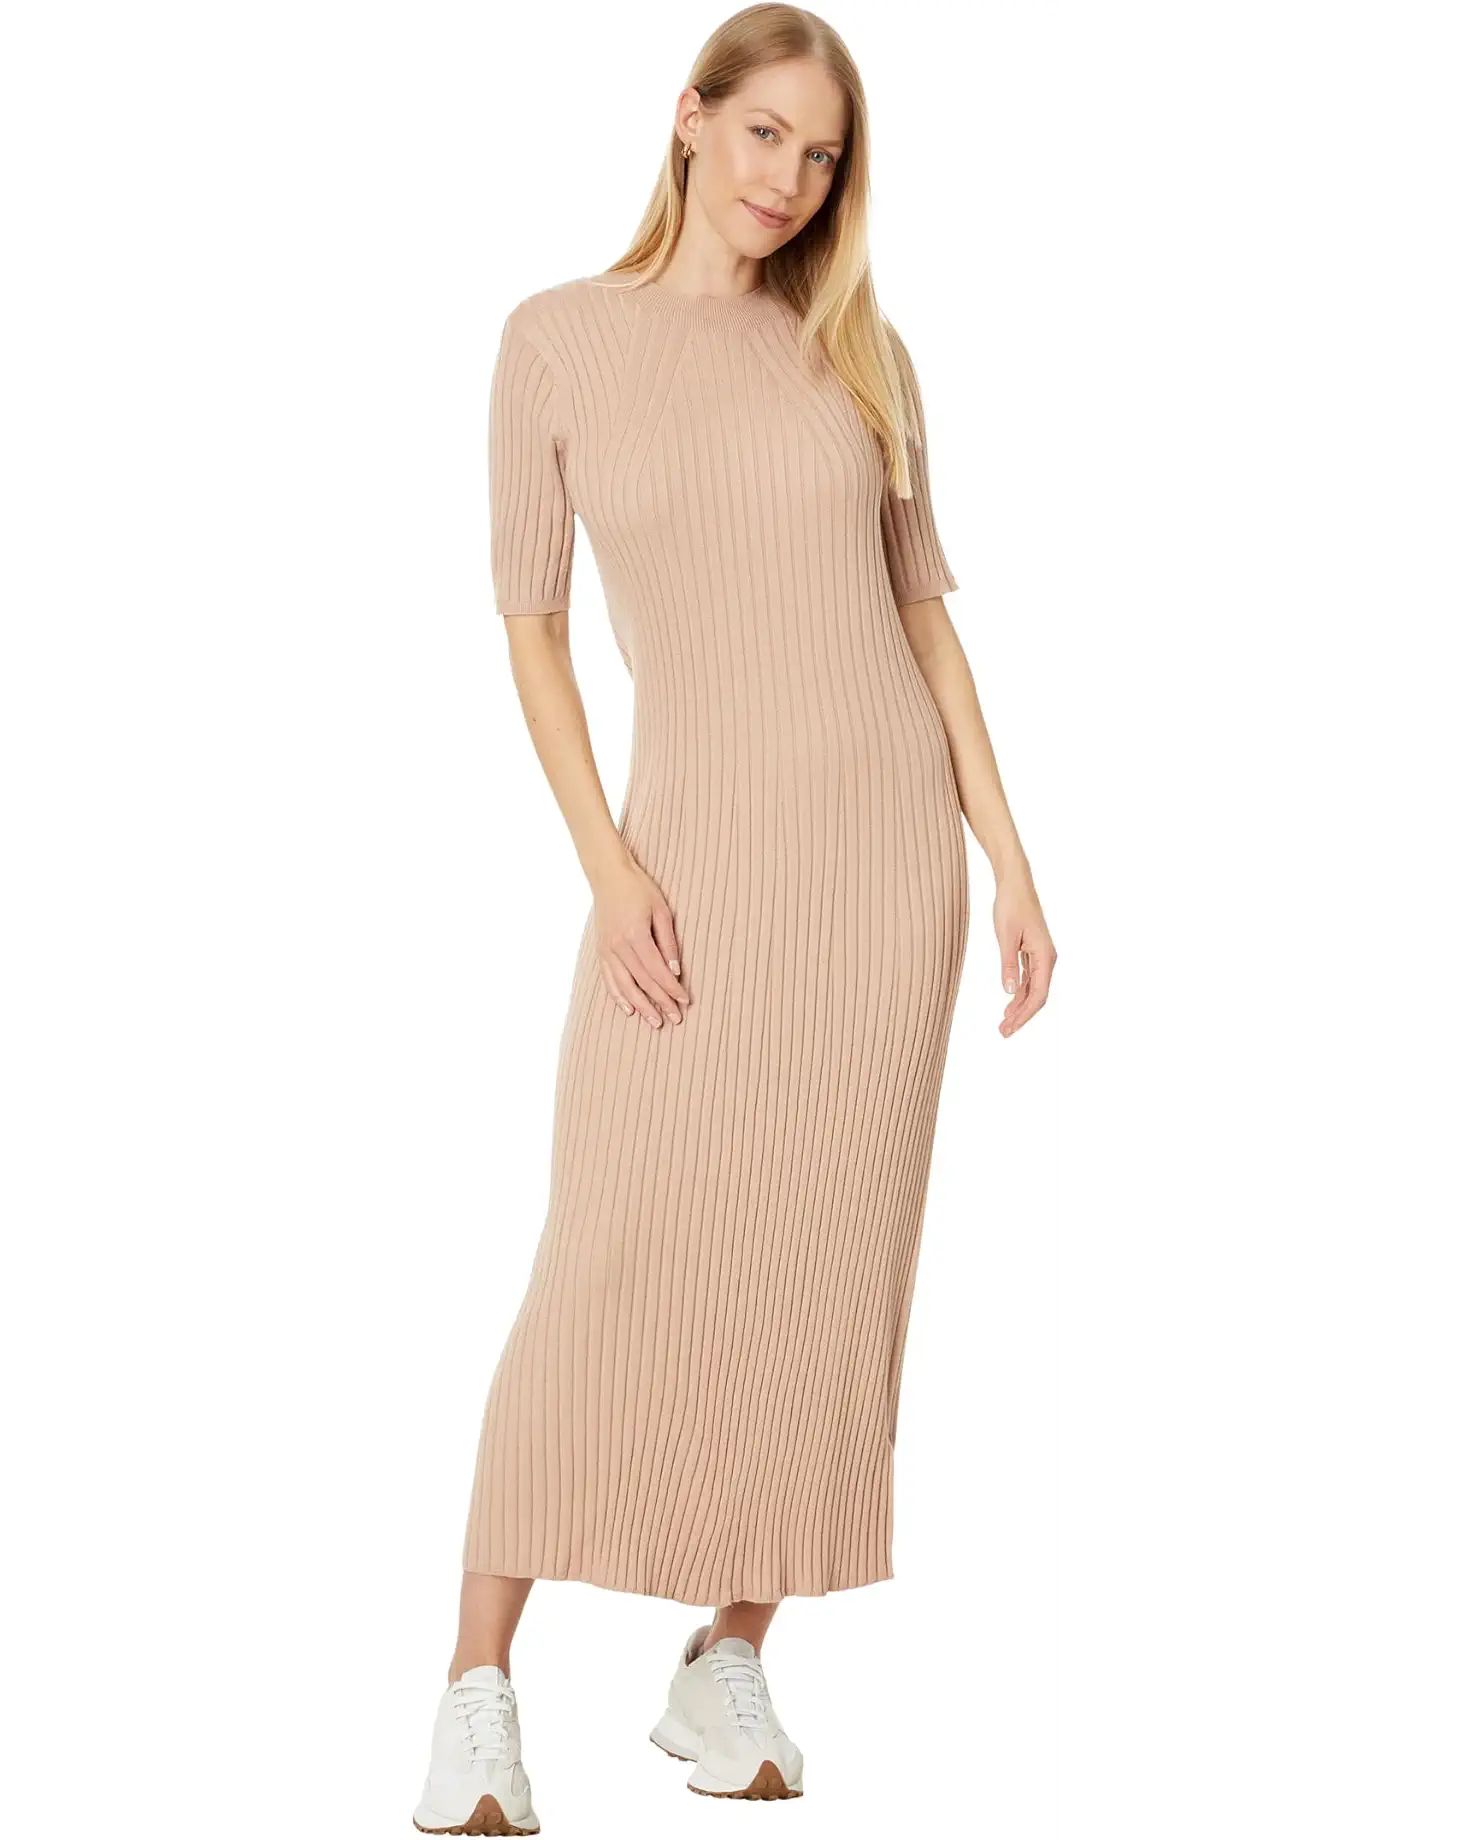 Varley Maeve Rib Knit Midi Dress | Zappos